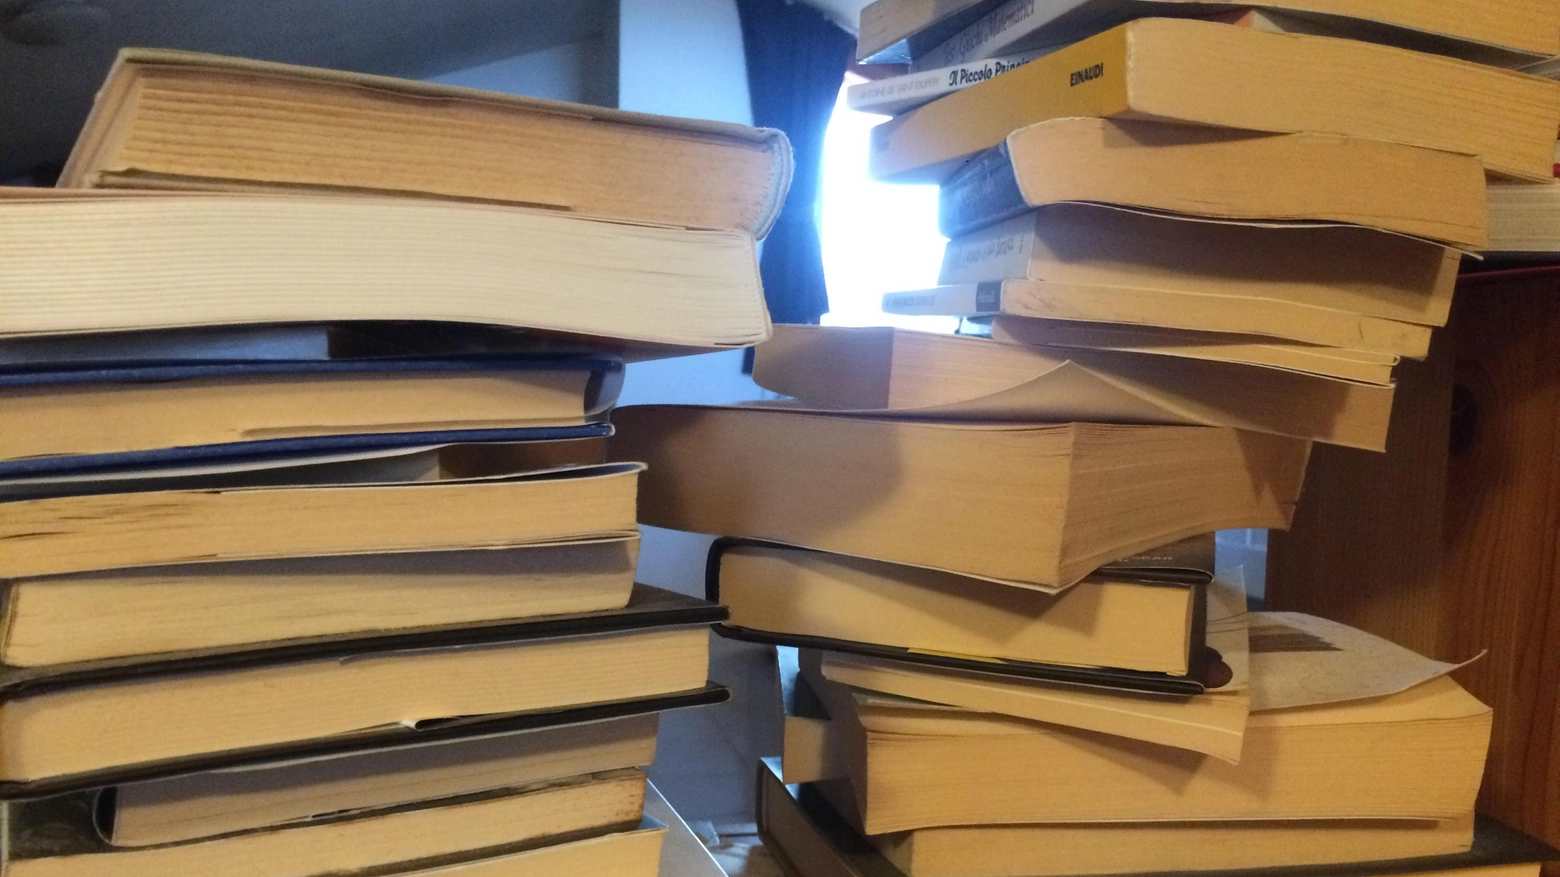 La biblioteca di Montespertoli regala libri a chi ne fa richiesta